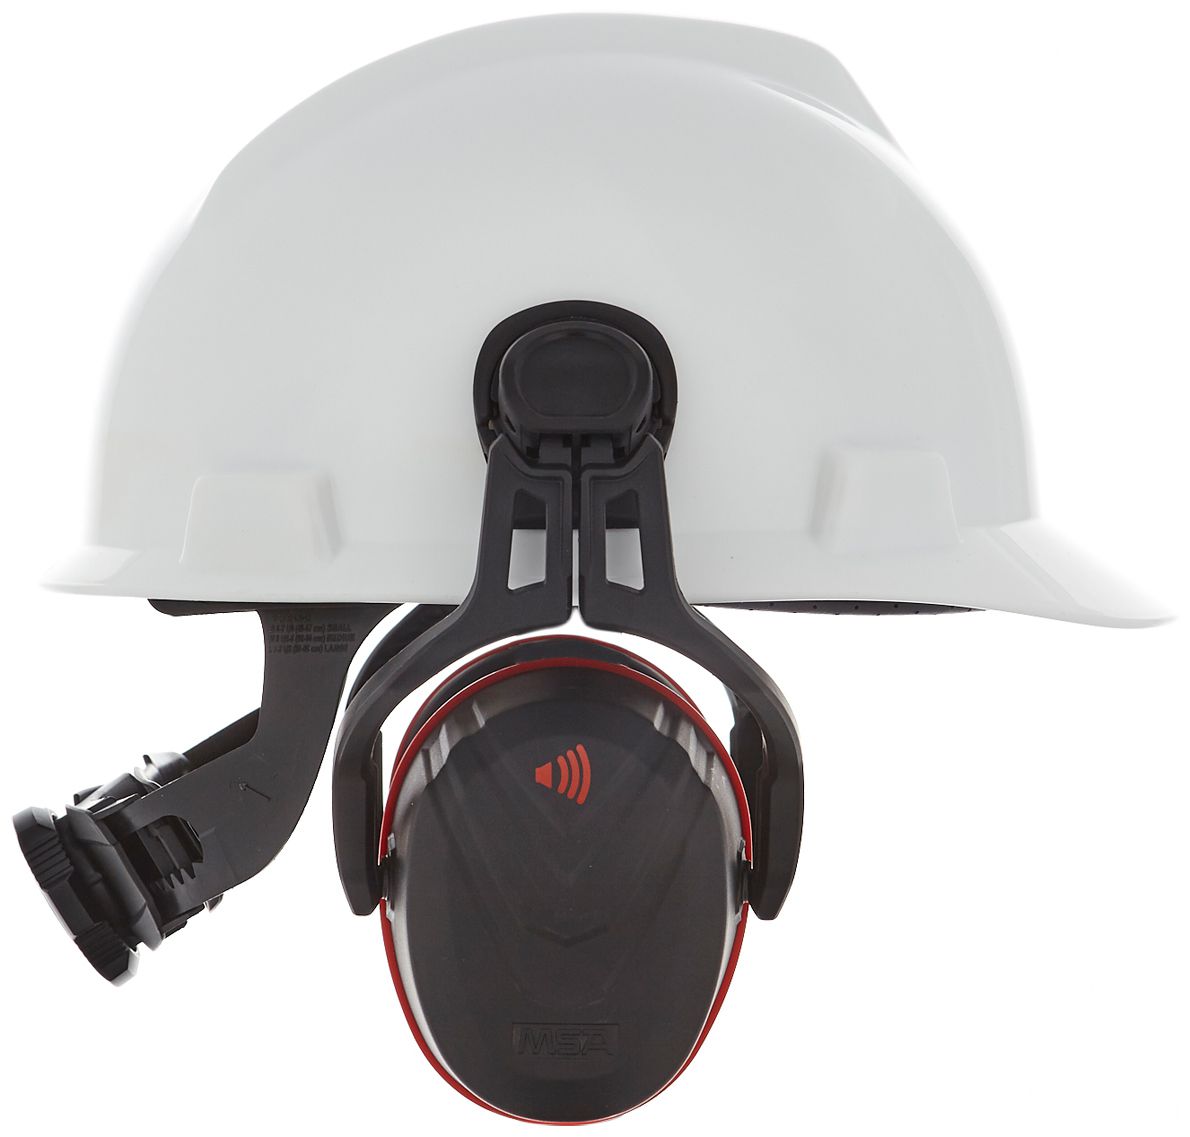 MSA V-Gard Helm-Kapselgehörschutz - Gehörschutz-Kapseln mit Halterung für die Helmmontage - Schwarz/Rot - SNR: 36 dB